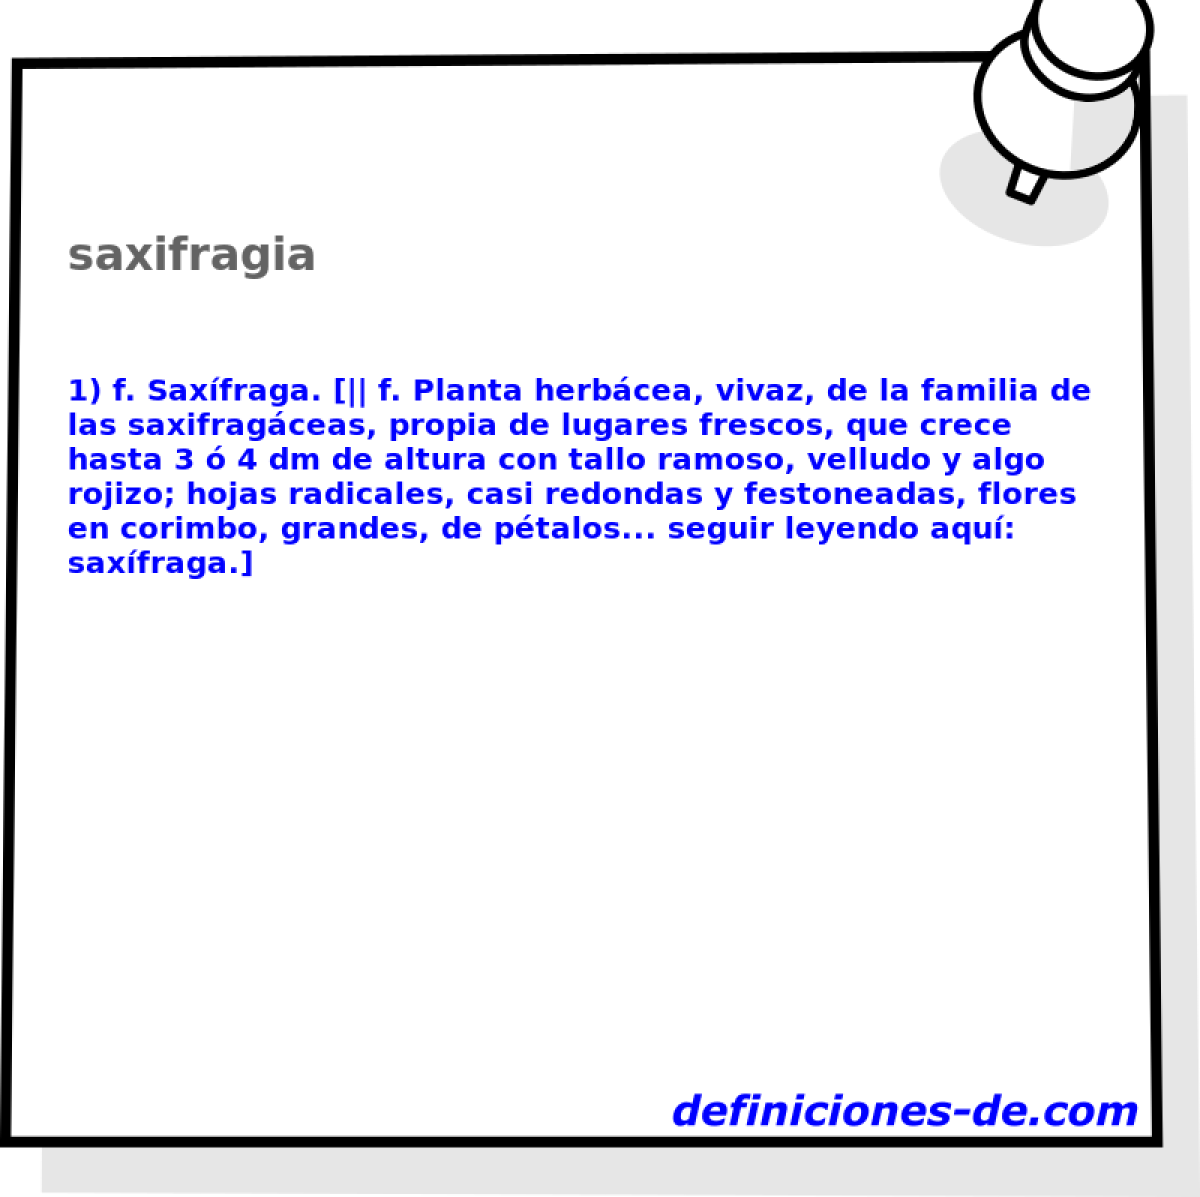 saxifragia 